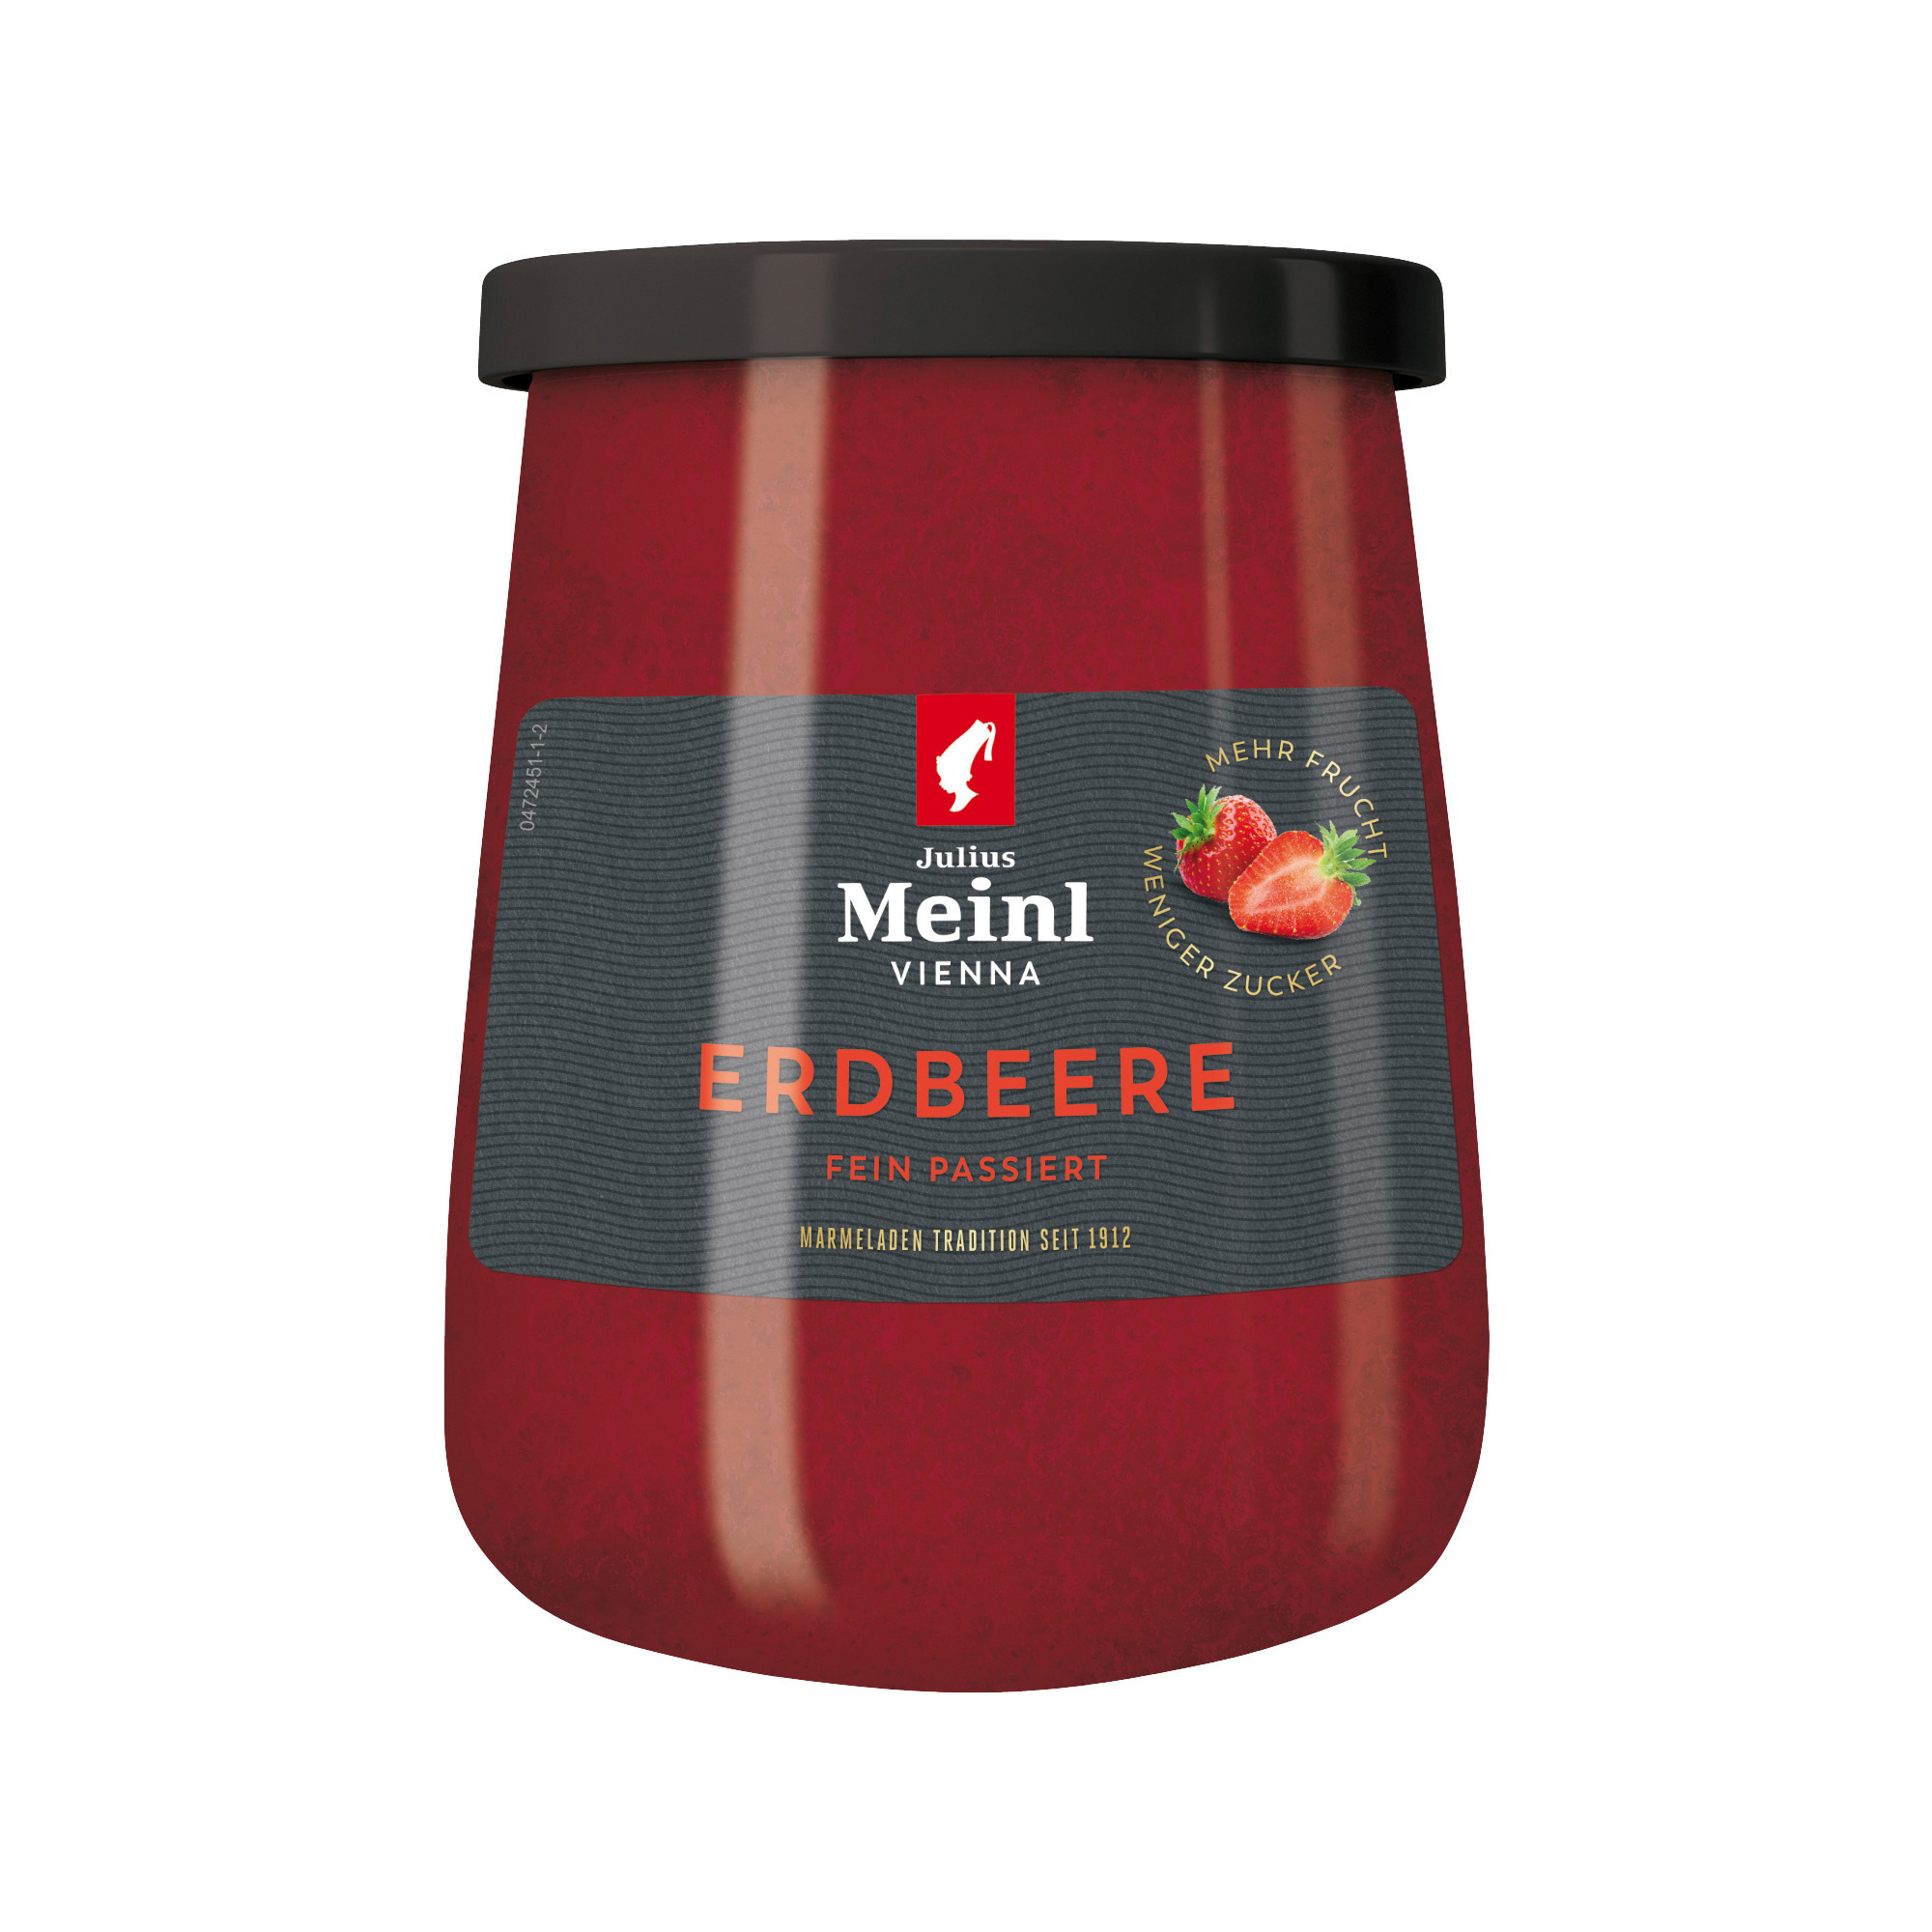 Meinl Konfit. F55% 350g, Erdbeer